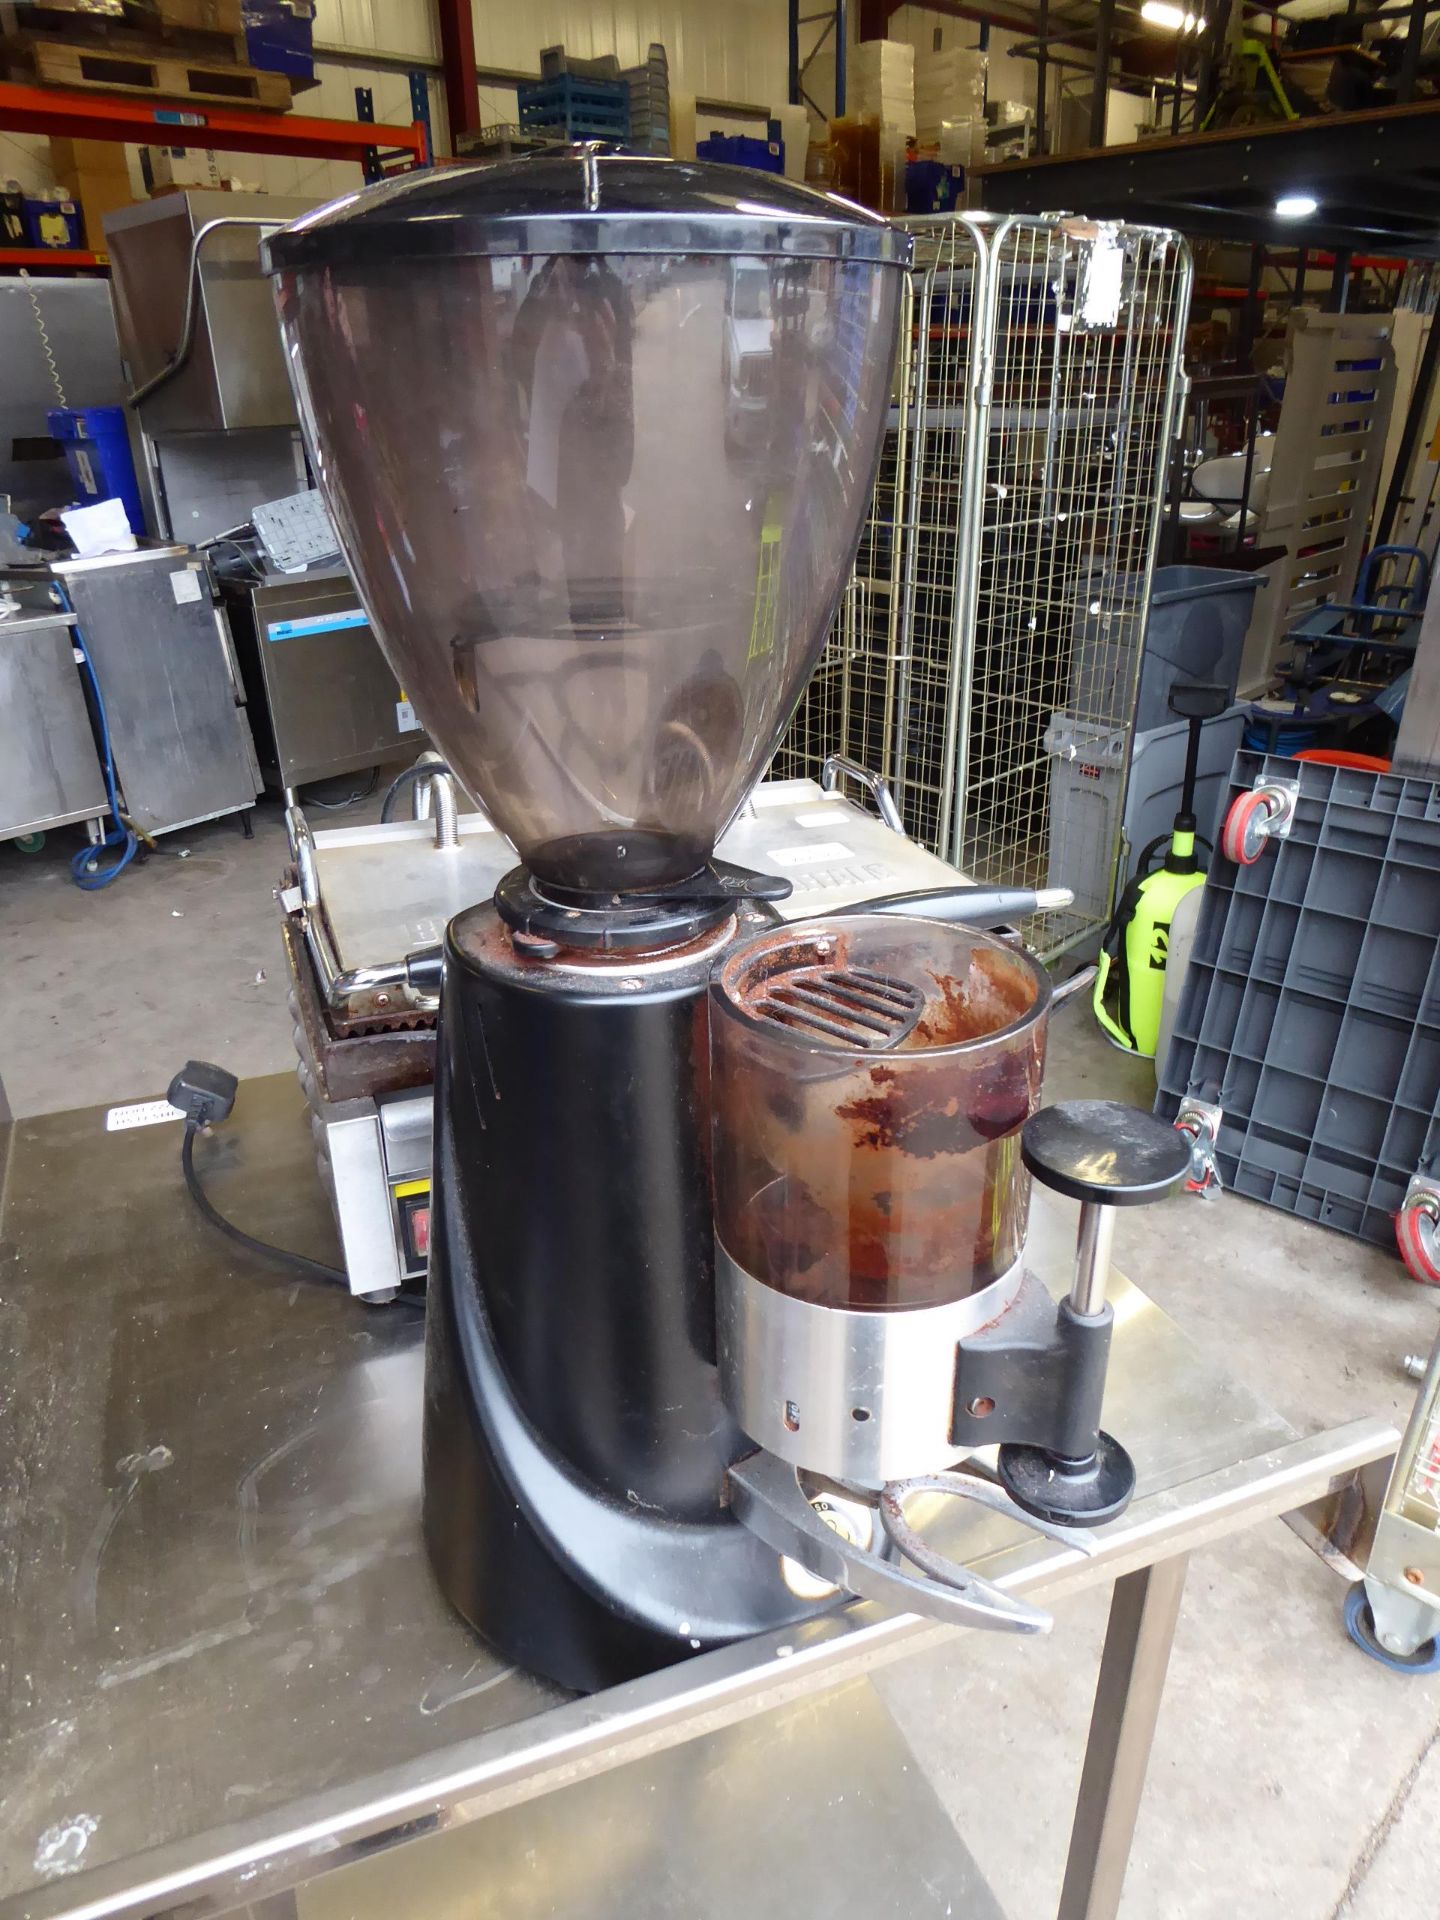 * Astro La Spaziale coffee grinder - Image 2 of 3